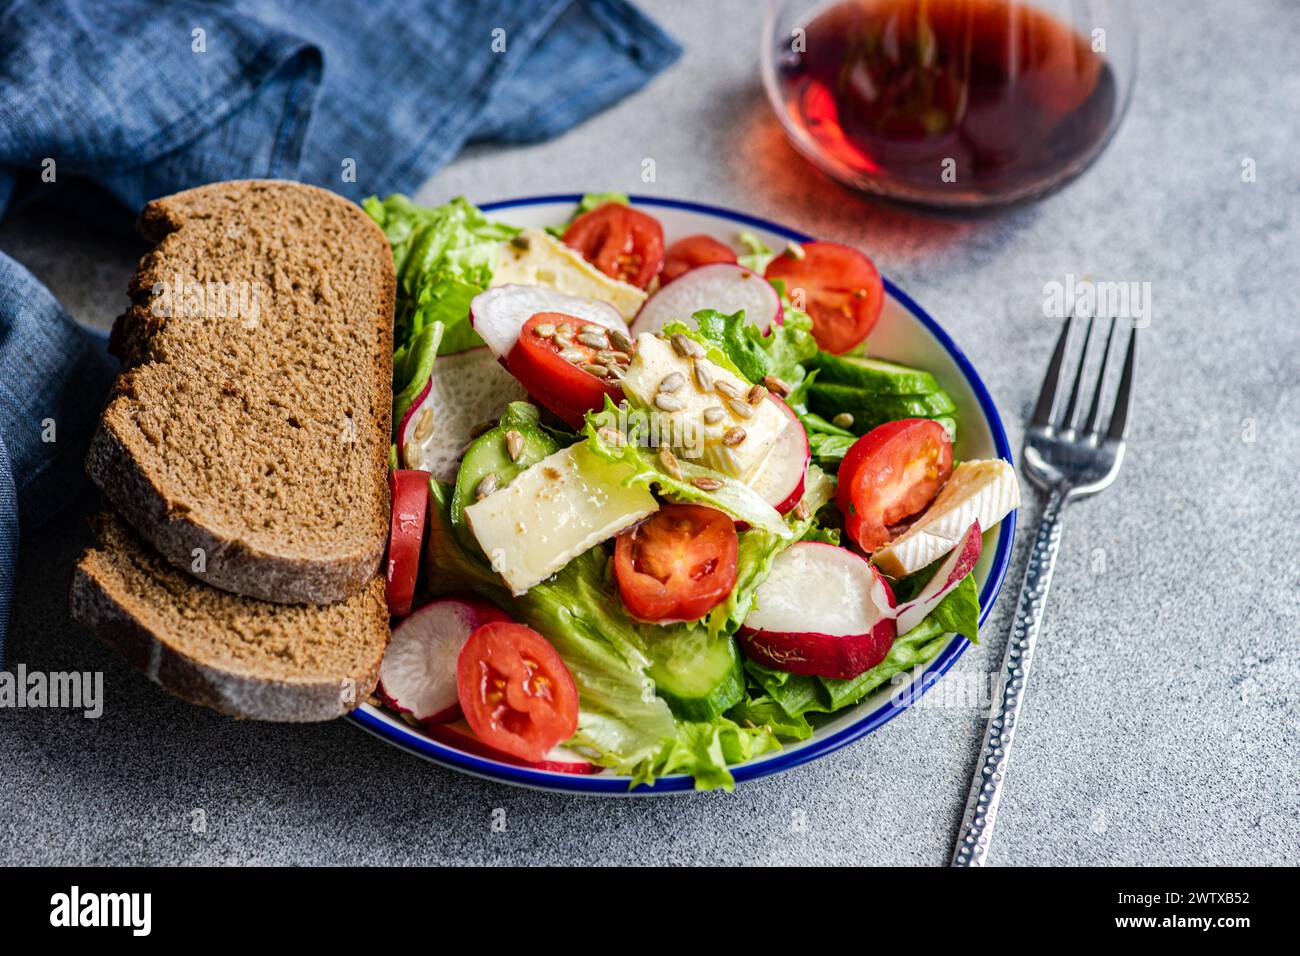 Gros plan de pain de seigle avec une salade de laitue, tomate, concombre, radis, brie et verre de vin rouge Banque D'Images